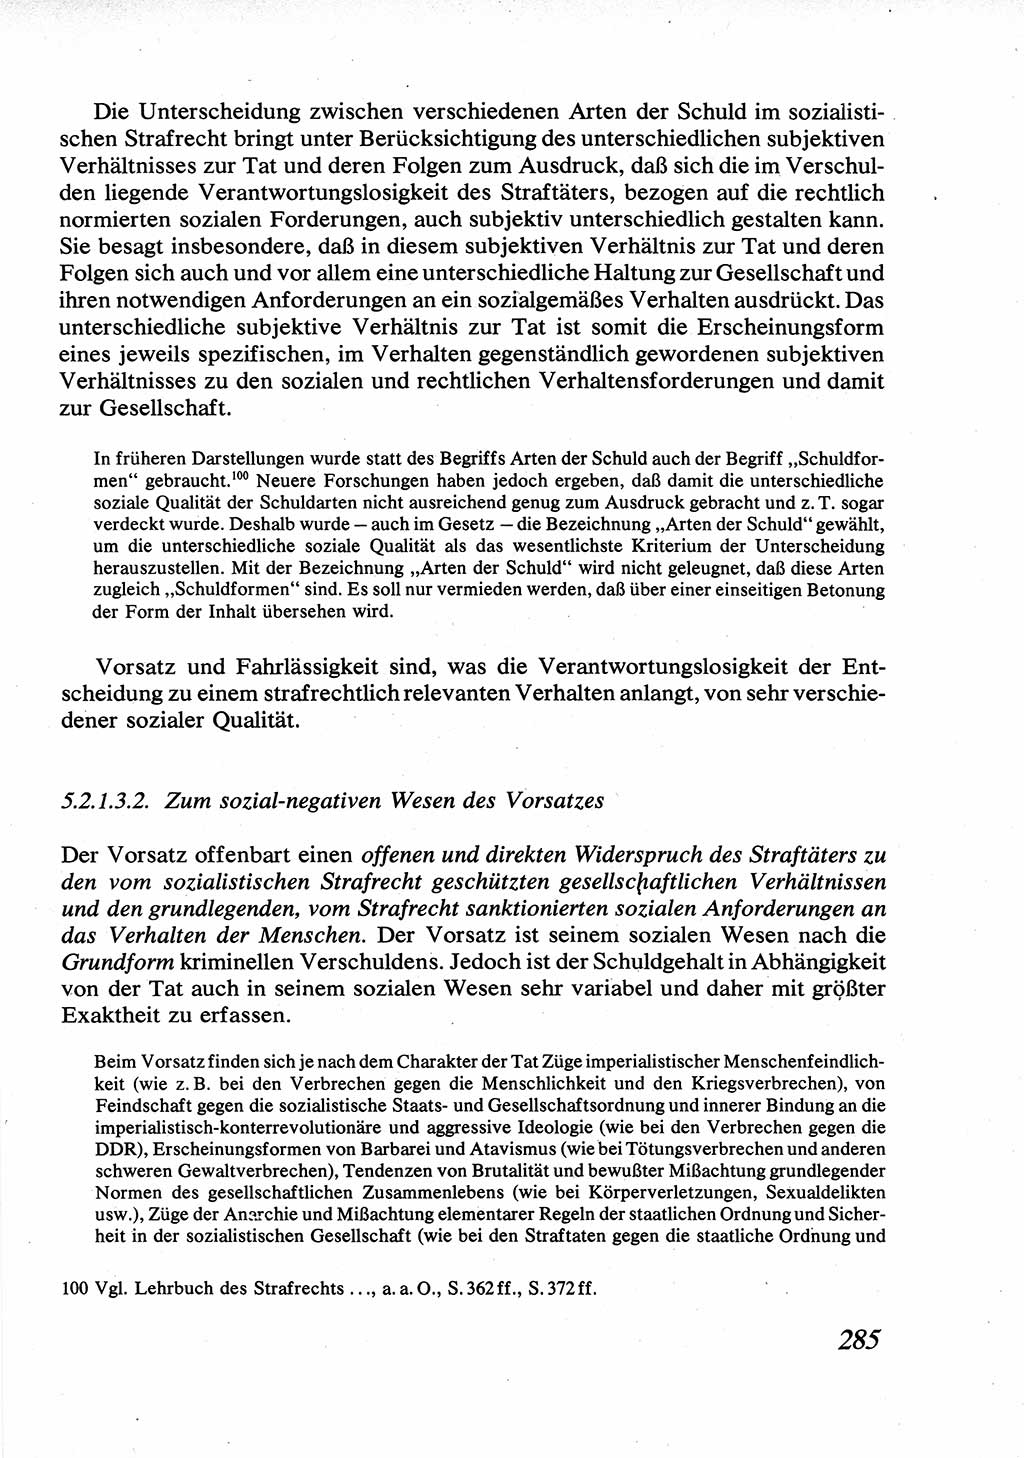 Strafrecht [Deutsche Demokratische Republik (DDR)], Allgemeiner Teil, Lehrbuch 1976, Seite 285 (Strafr. DDR AT Lb. 1976, S. 285)